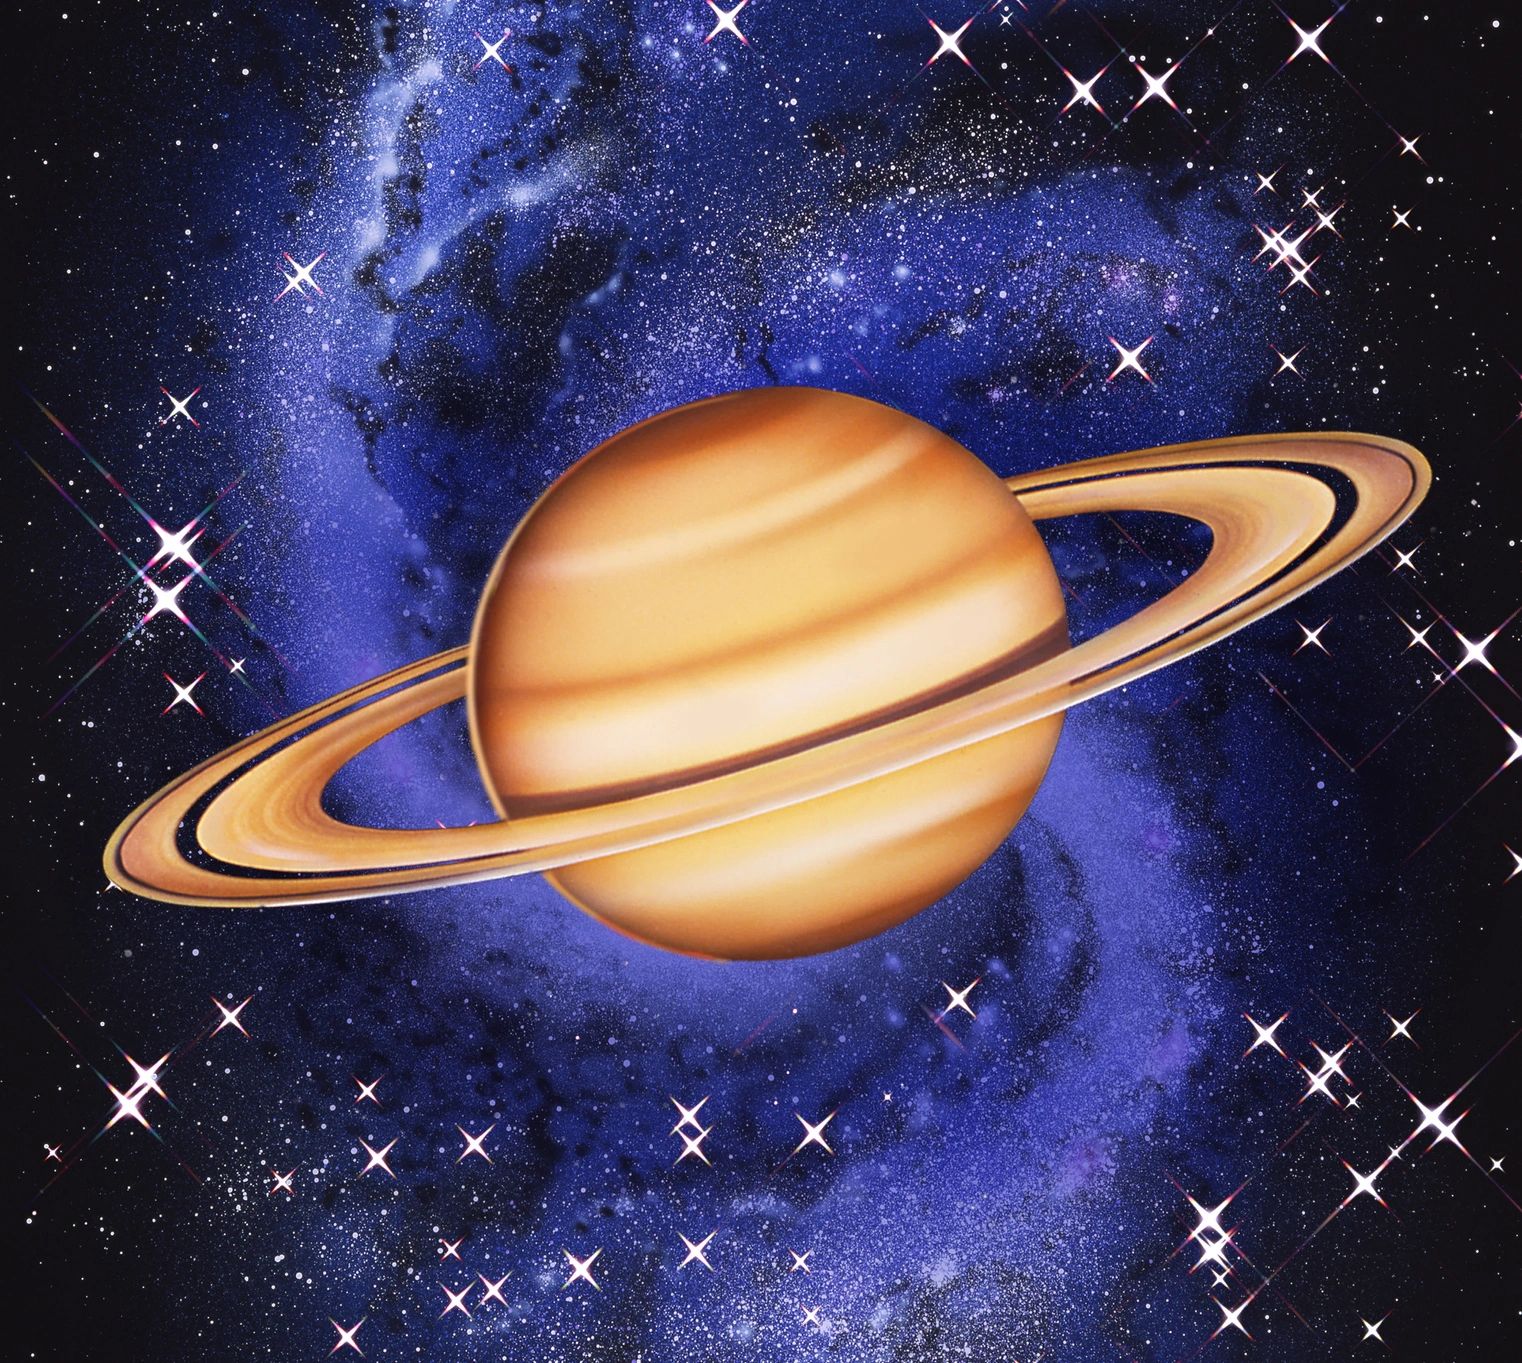 Saturn Retrograde May 10Sept 28, 2020